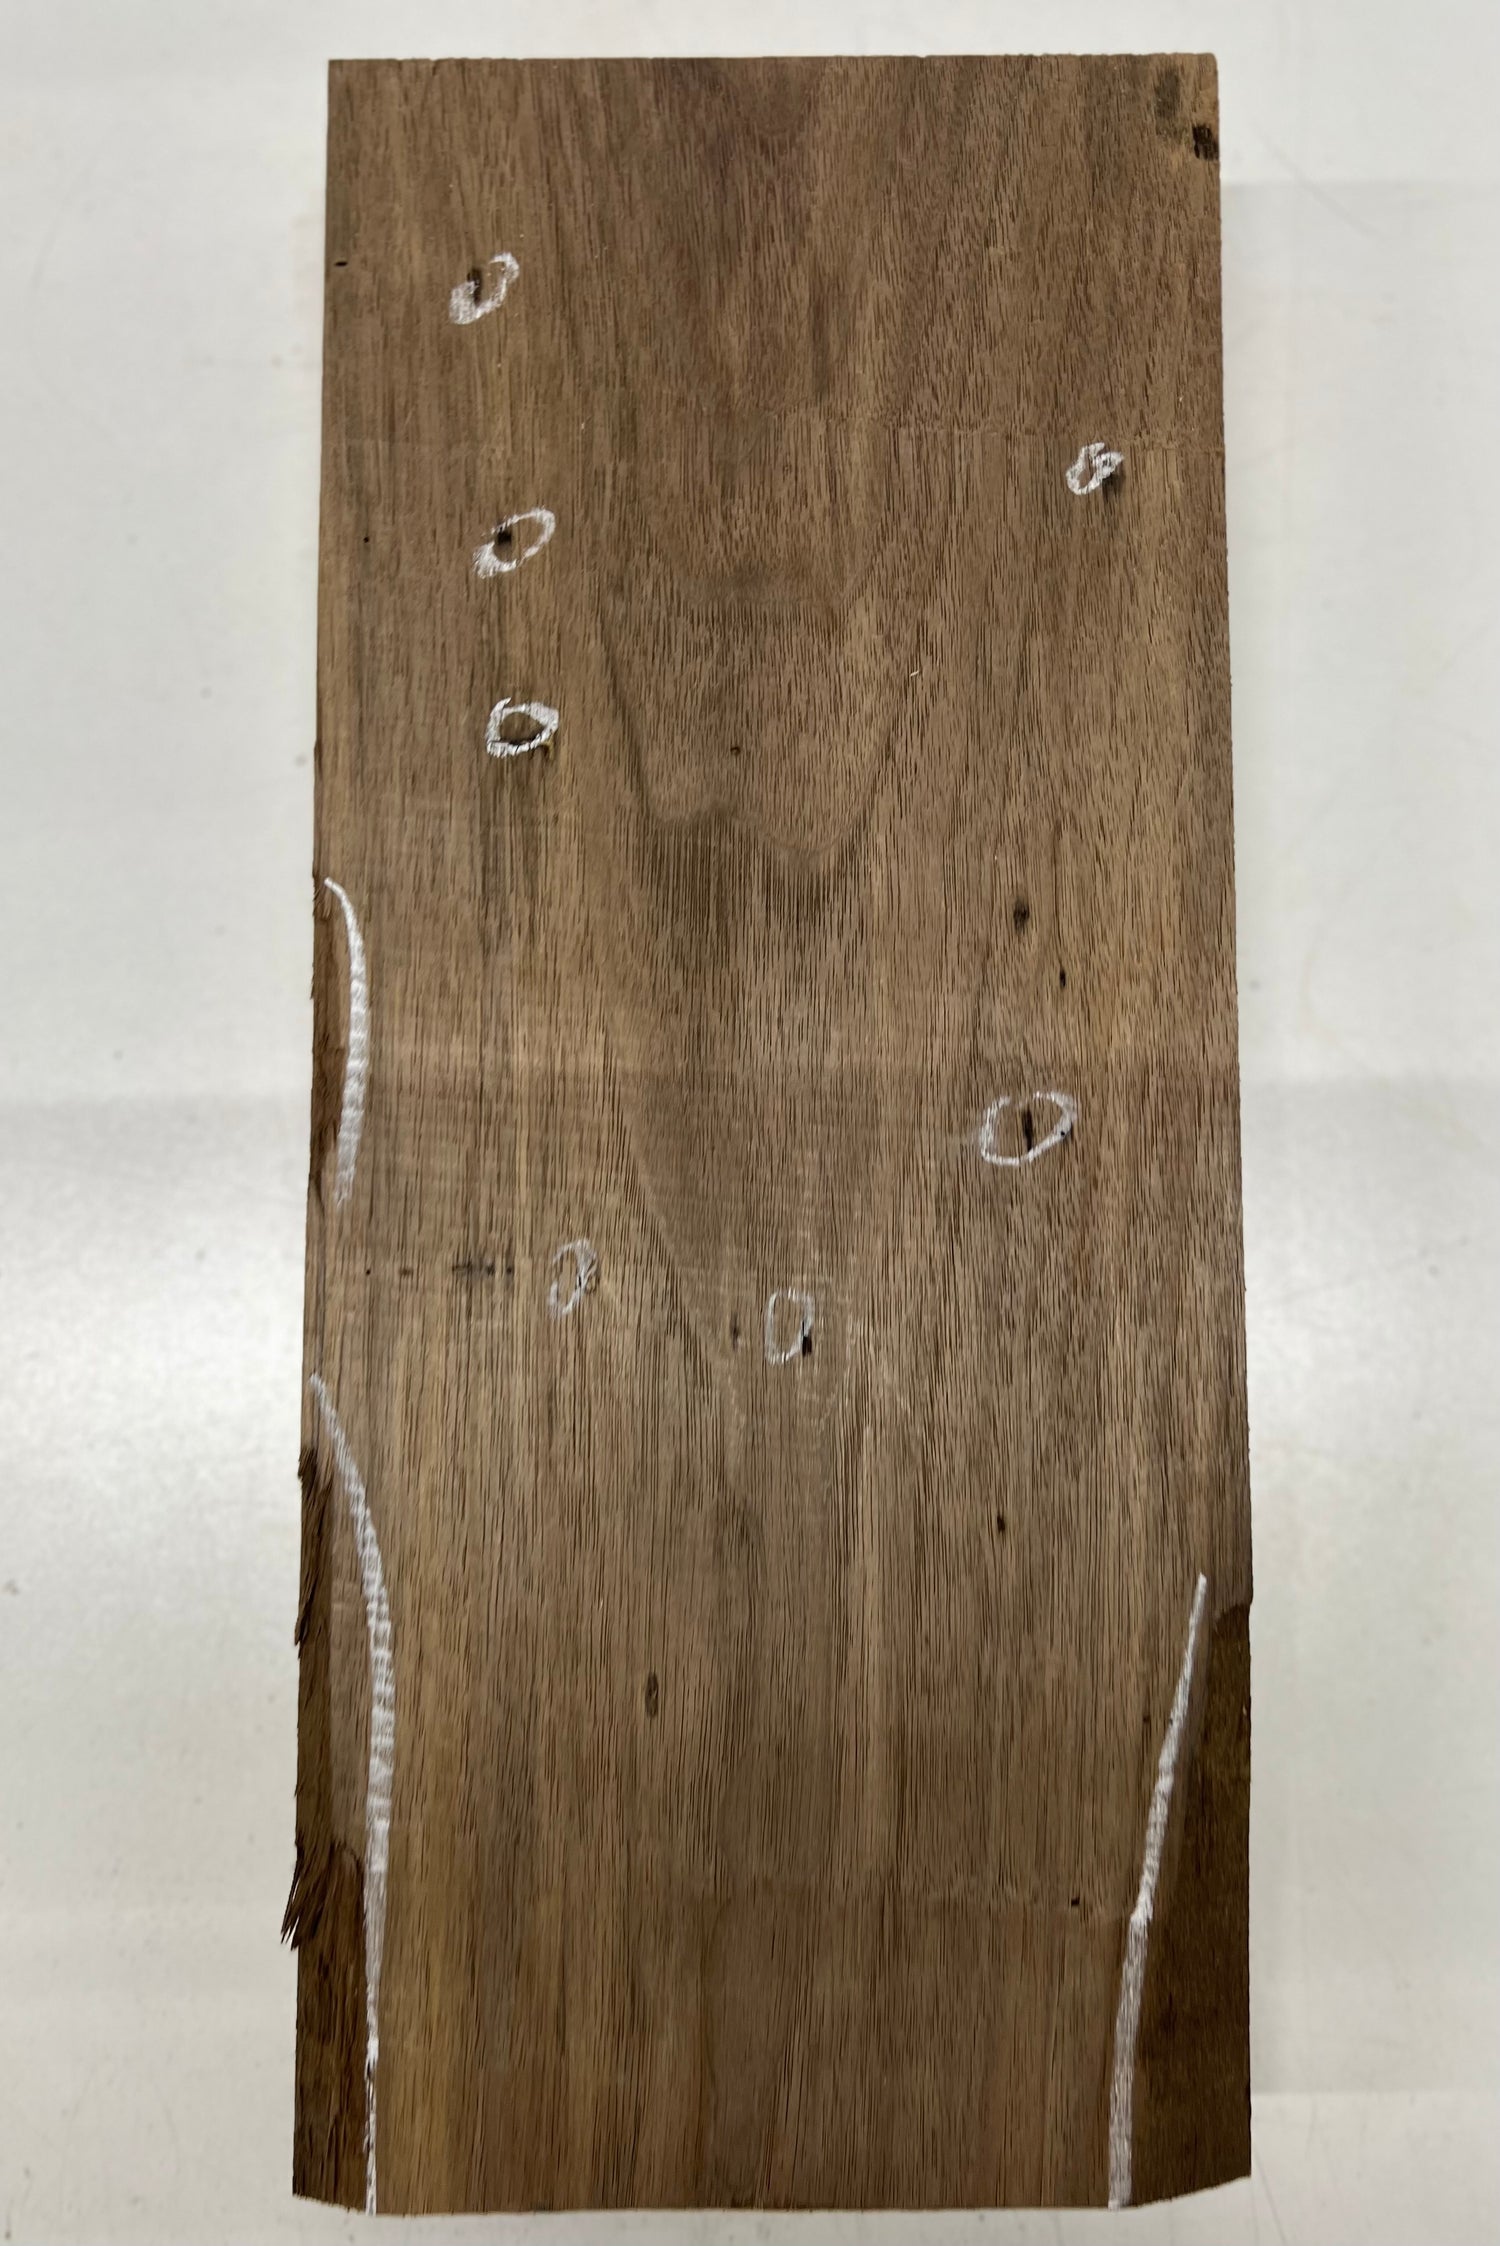 Black Walnut Lumber Board Wood Blank 16&quot;x7&quot;x2&quot; 